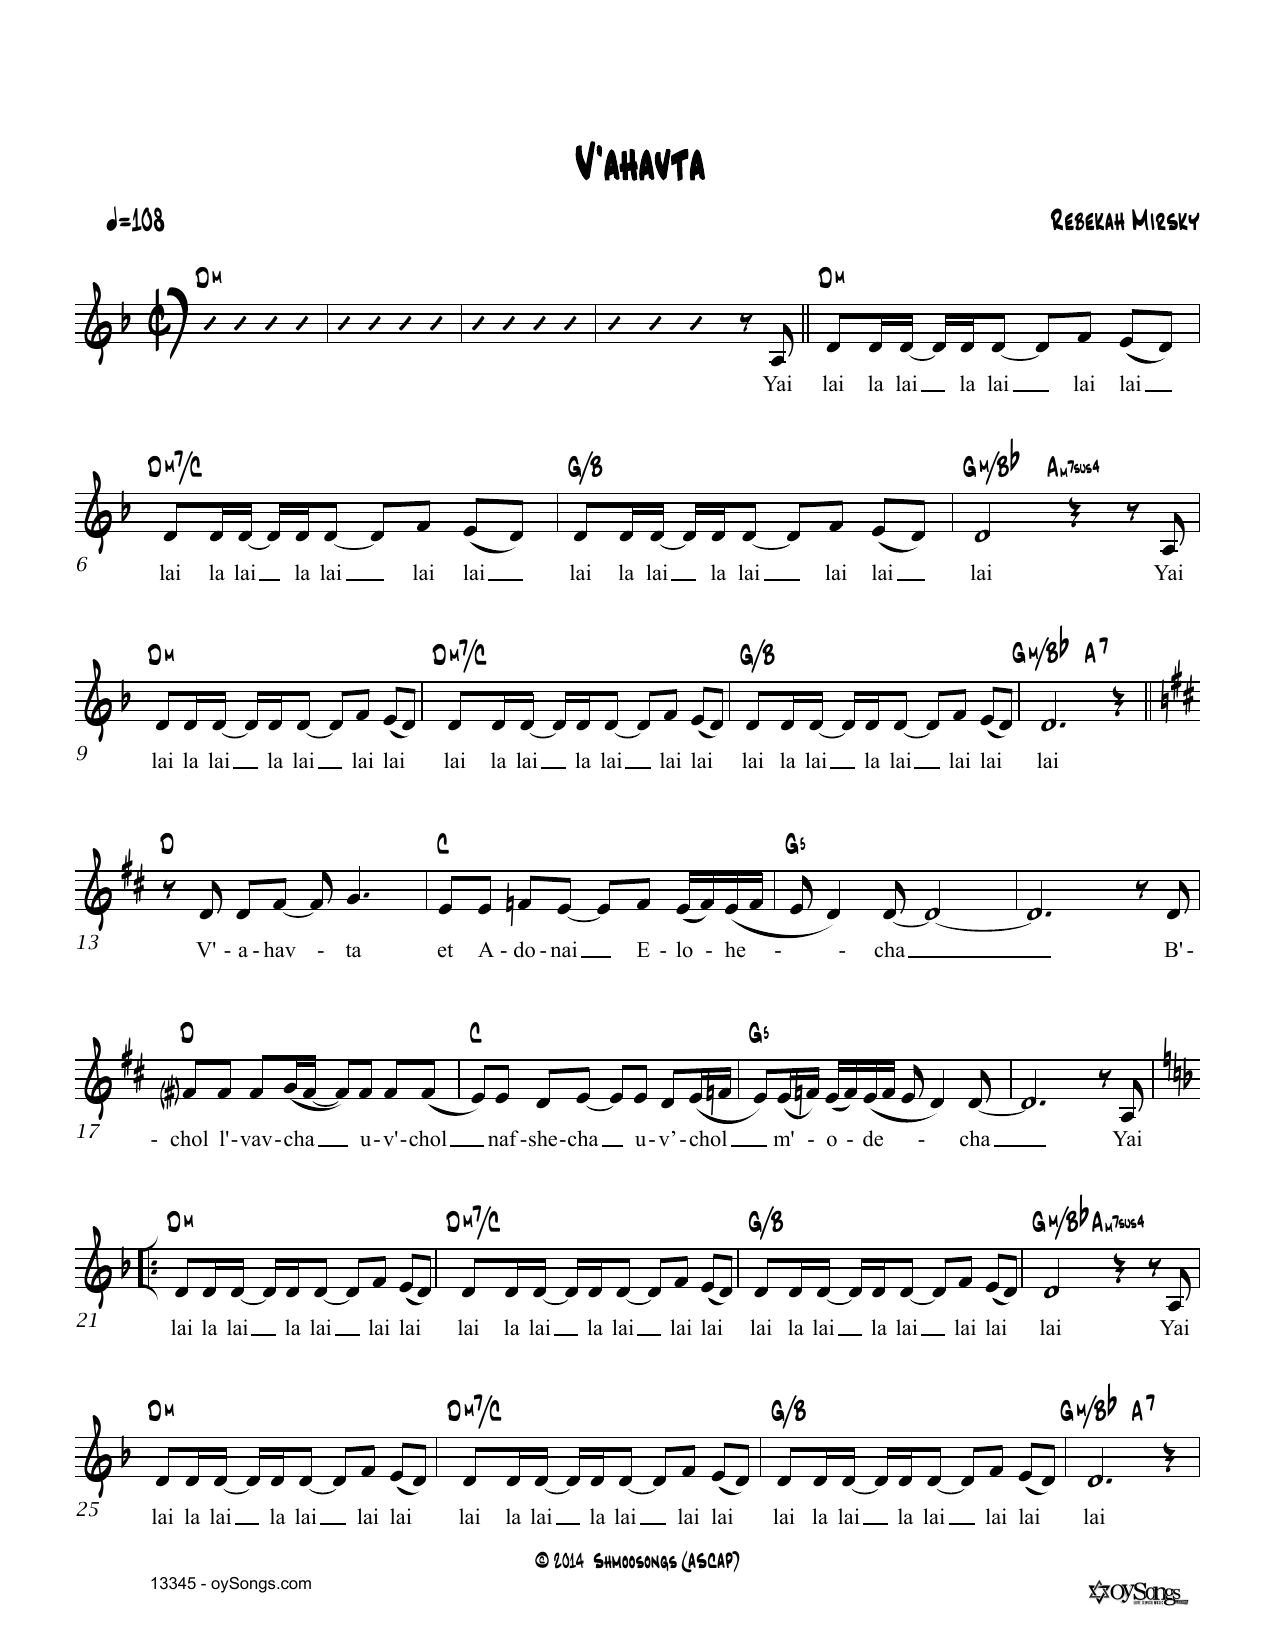 Rebecca Mirsky V'ahavta Sheet Music Notes & Chords for Real Book – Melody, Lyrics & Chords - Download or Print PDF